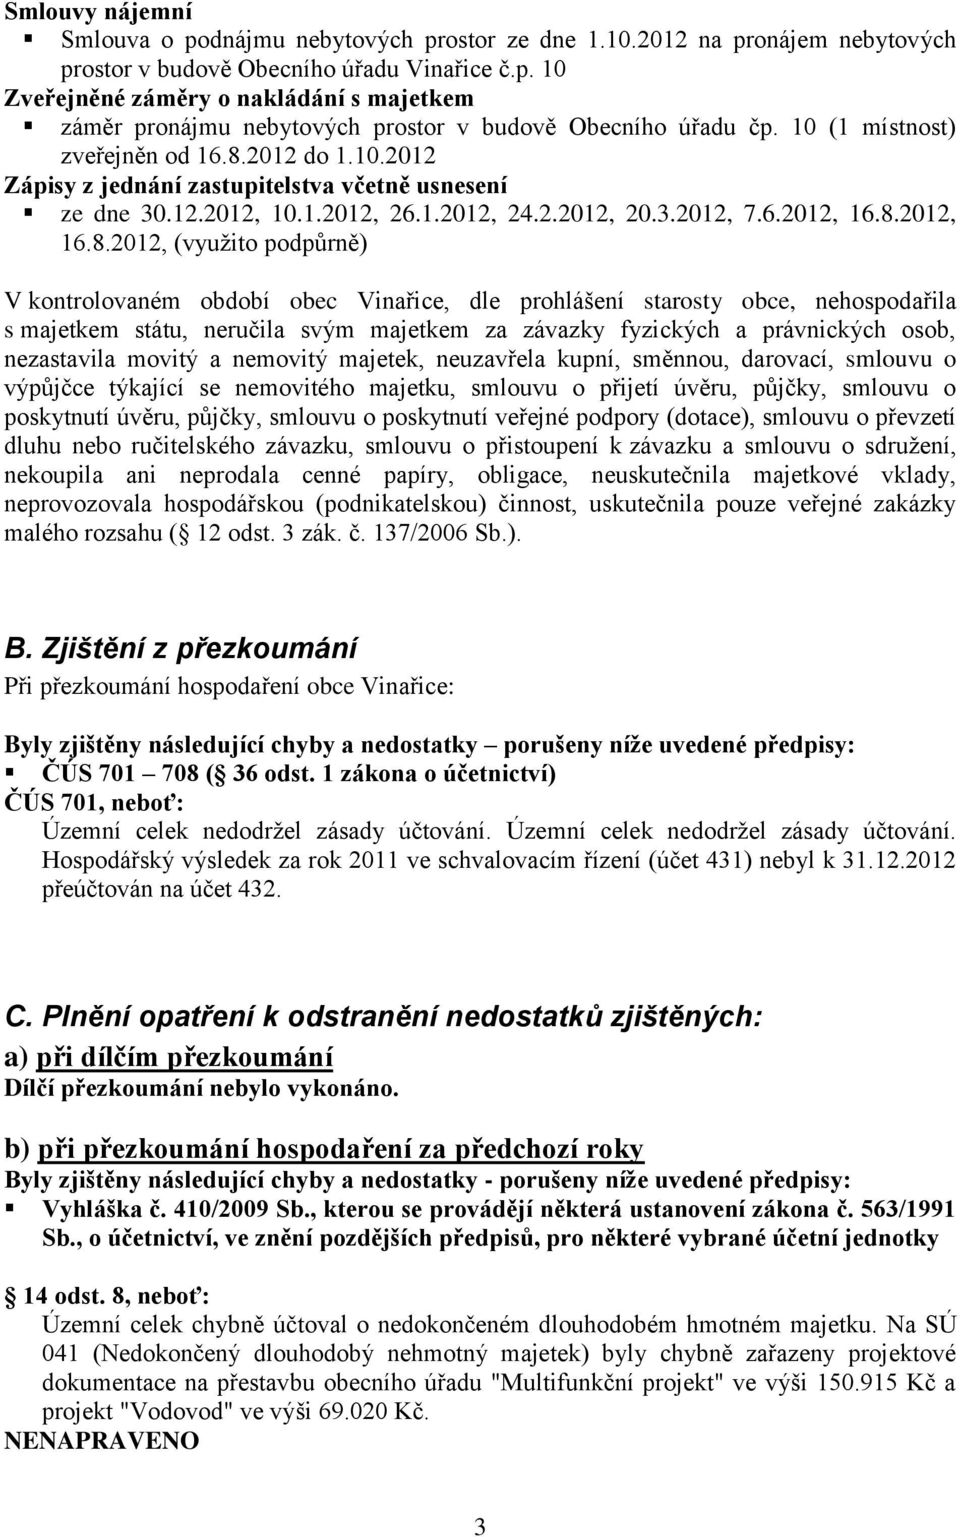 2012 do 1.10.2012 Zápisy z jednání zastupitelstva včetně usnesení ze dne 30.12.2012, 10.1.2012, 26.1.2012, 24.2.2012, 20.3.2012, 7.6.2012, 16.8.